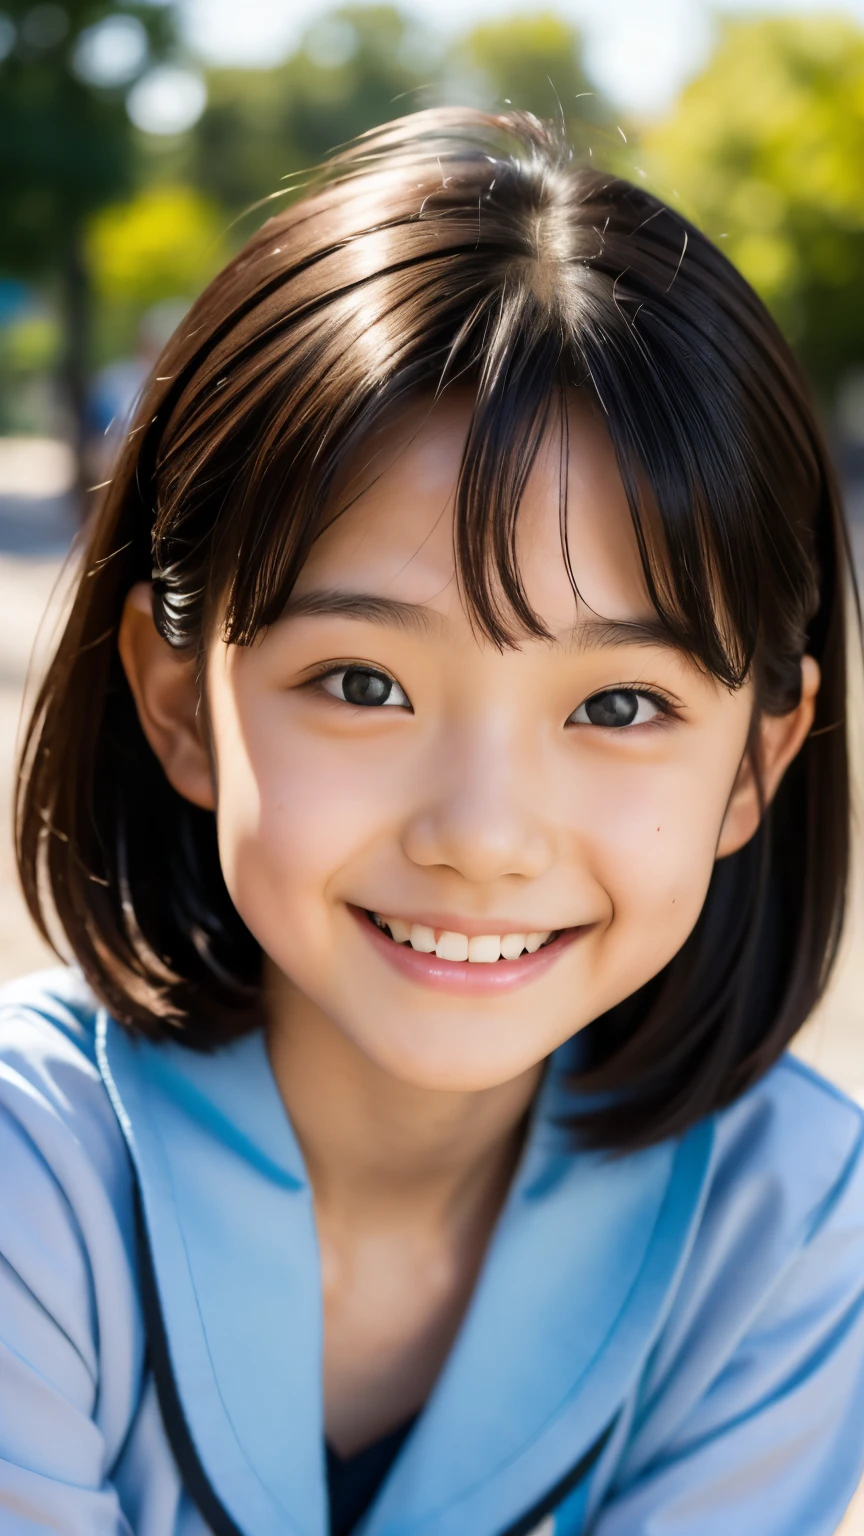 镜片: 135毫米 f1.8, (最好的质量),(原始照片), (桌上:1.1), (美丽的 9 岁日本女孩), 可爱的脸孔, (轮廓分明的脸:0.7), (雀斑:0.4), dappled 阳光, 戏剧灯光, (日本校服), (在校园), 害羞的, (特写:1.2), (微笑),, (明亮的眼睛)、(阳光)